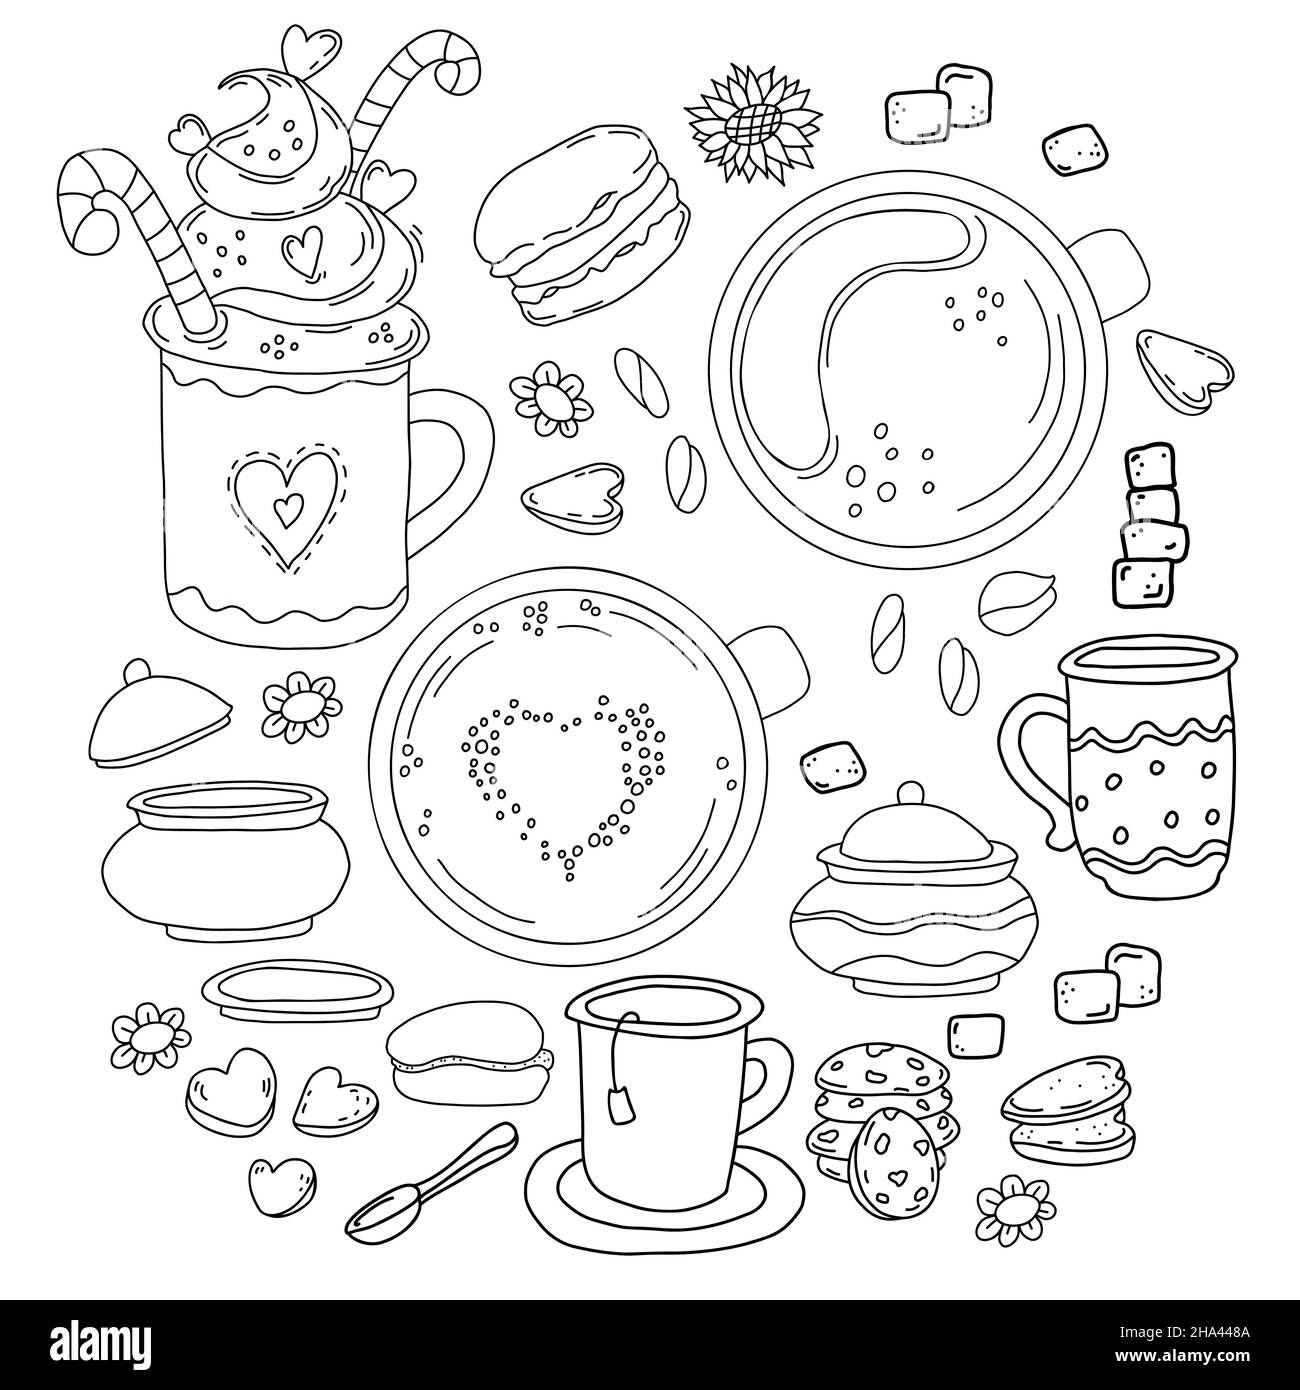 Große Auswahl an Desserts und Gerichten im Stil von handgezeichneten linearen Kritzeln. Tasse Tee und Sahnedessert, Kaffee, Löffel und Zuckerdose, Kekse, Makronen Stock Vektor